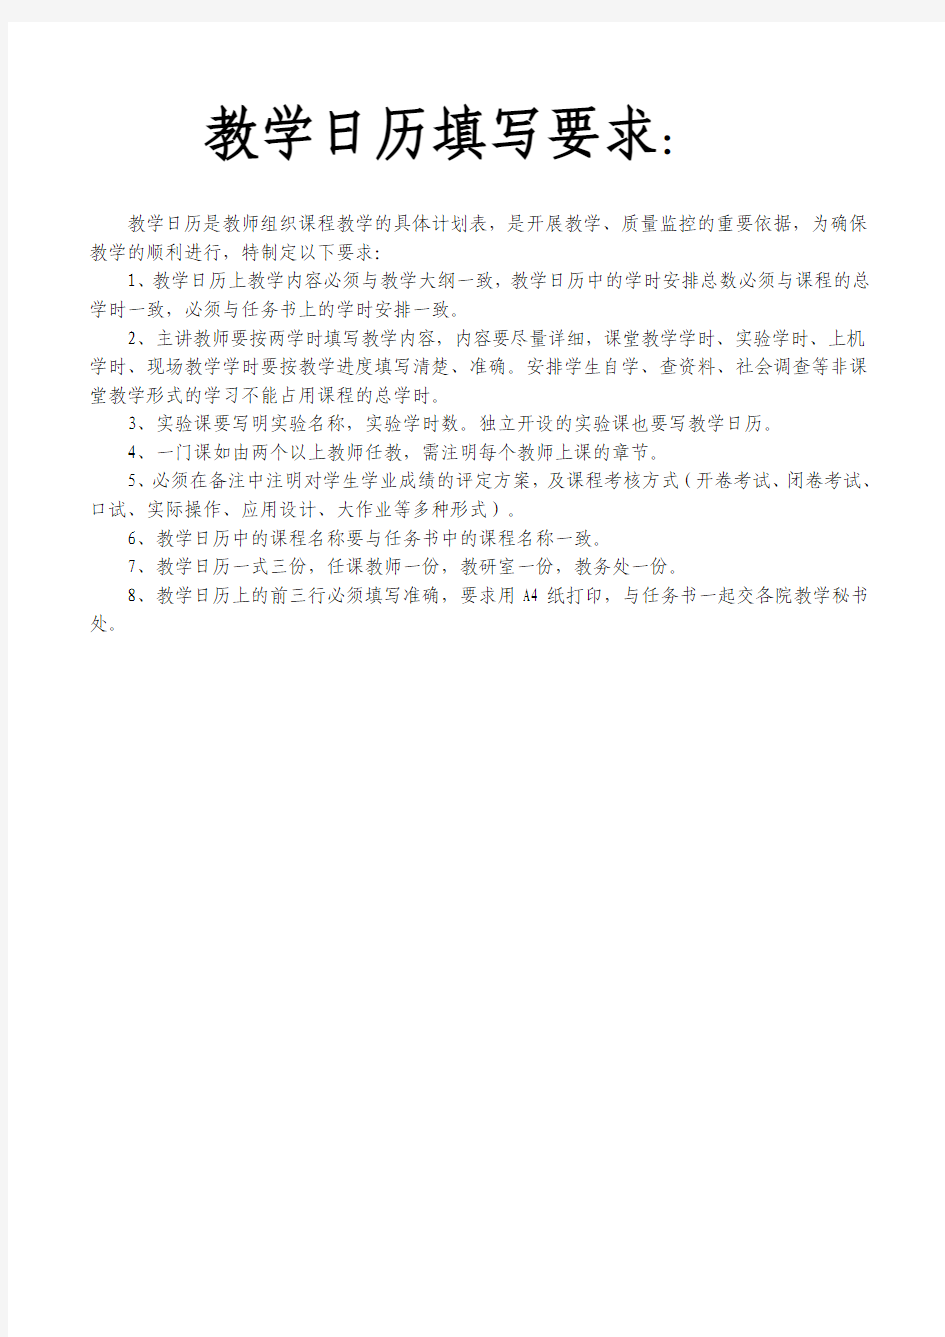 中国地质大学 教学日历填写要求